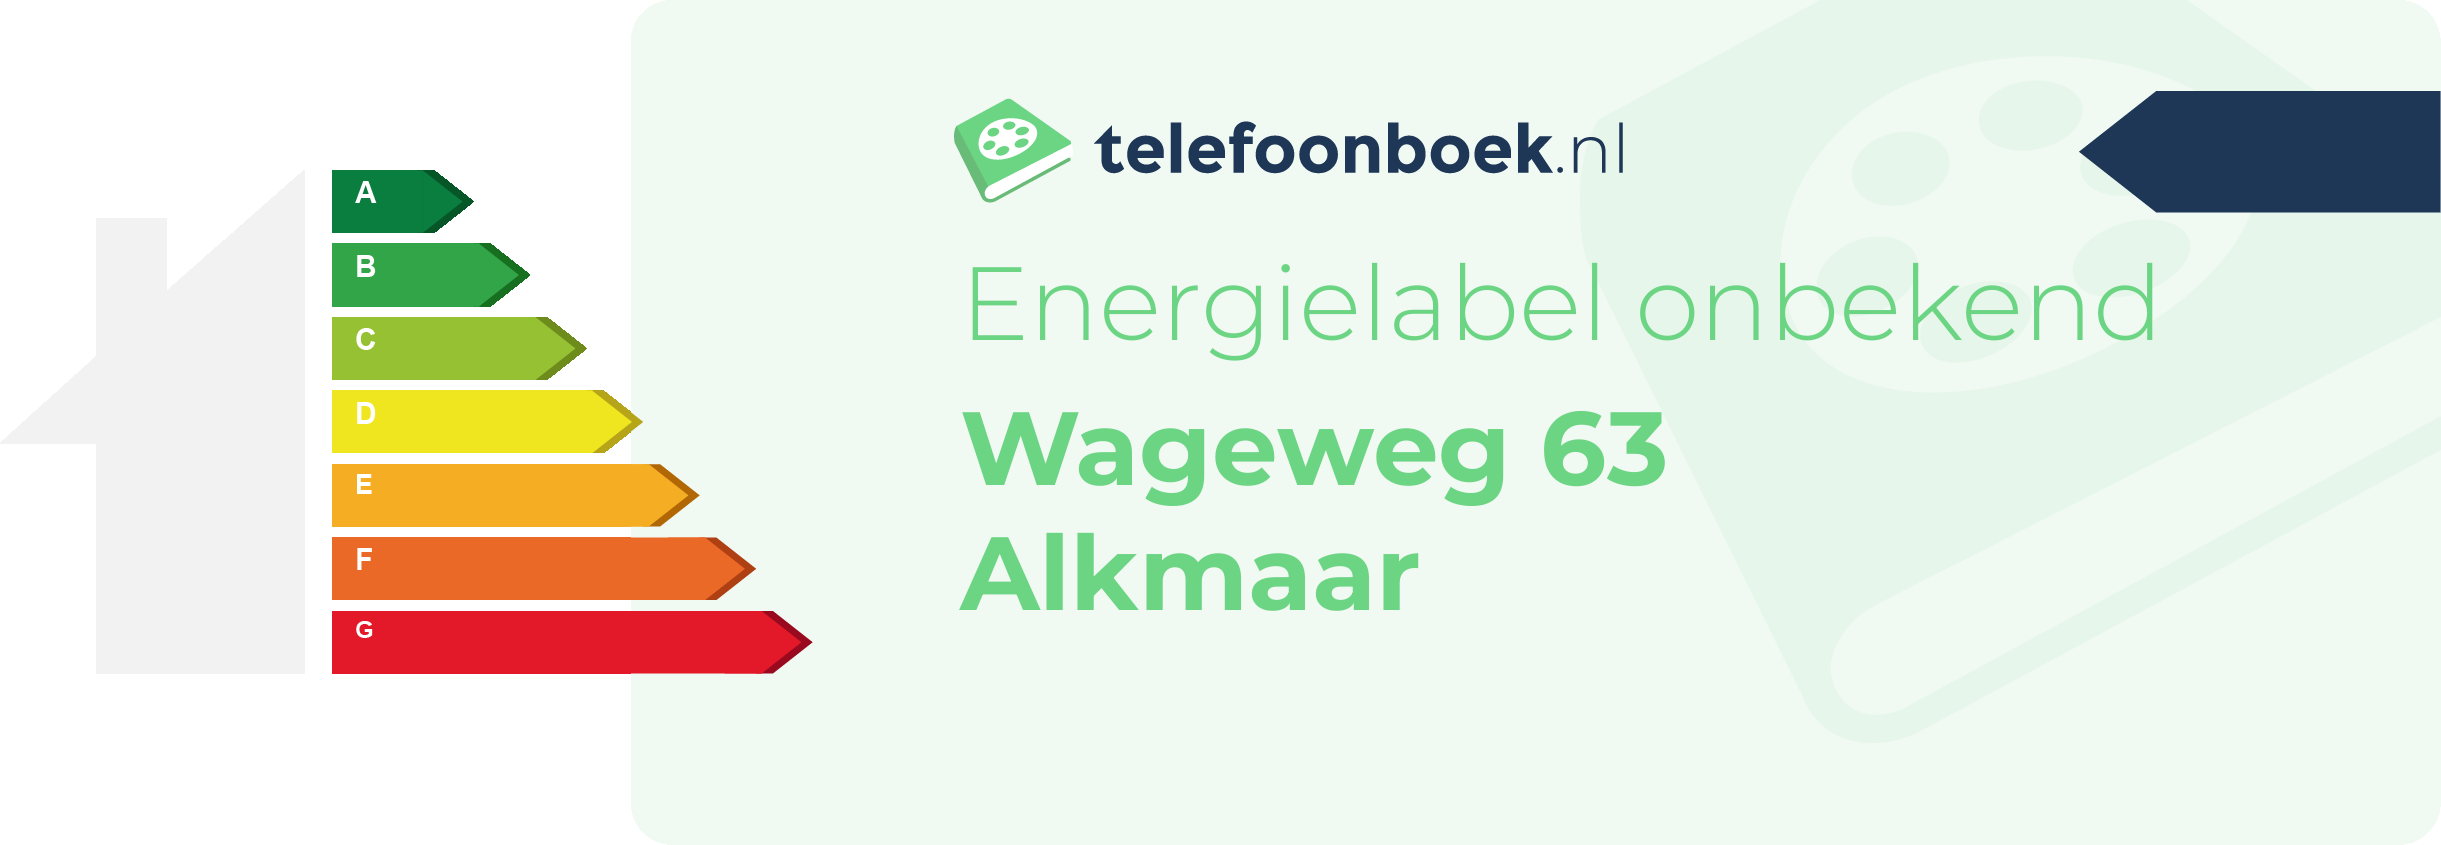 Energielabel Wageweg 63 Alkmaar